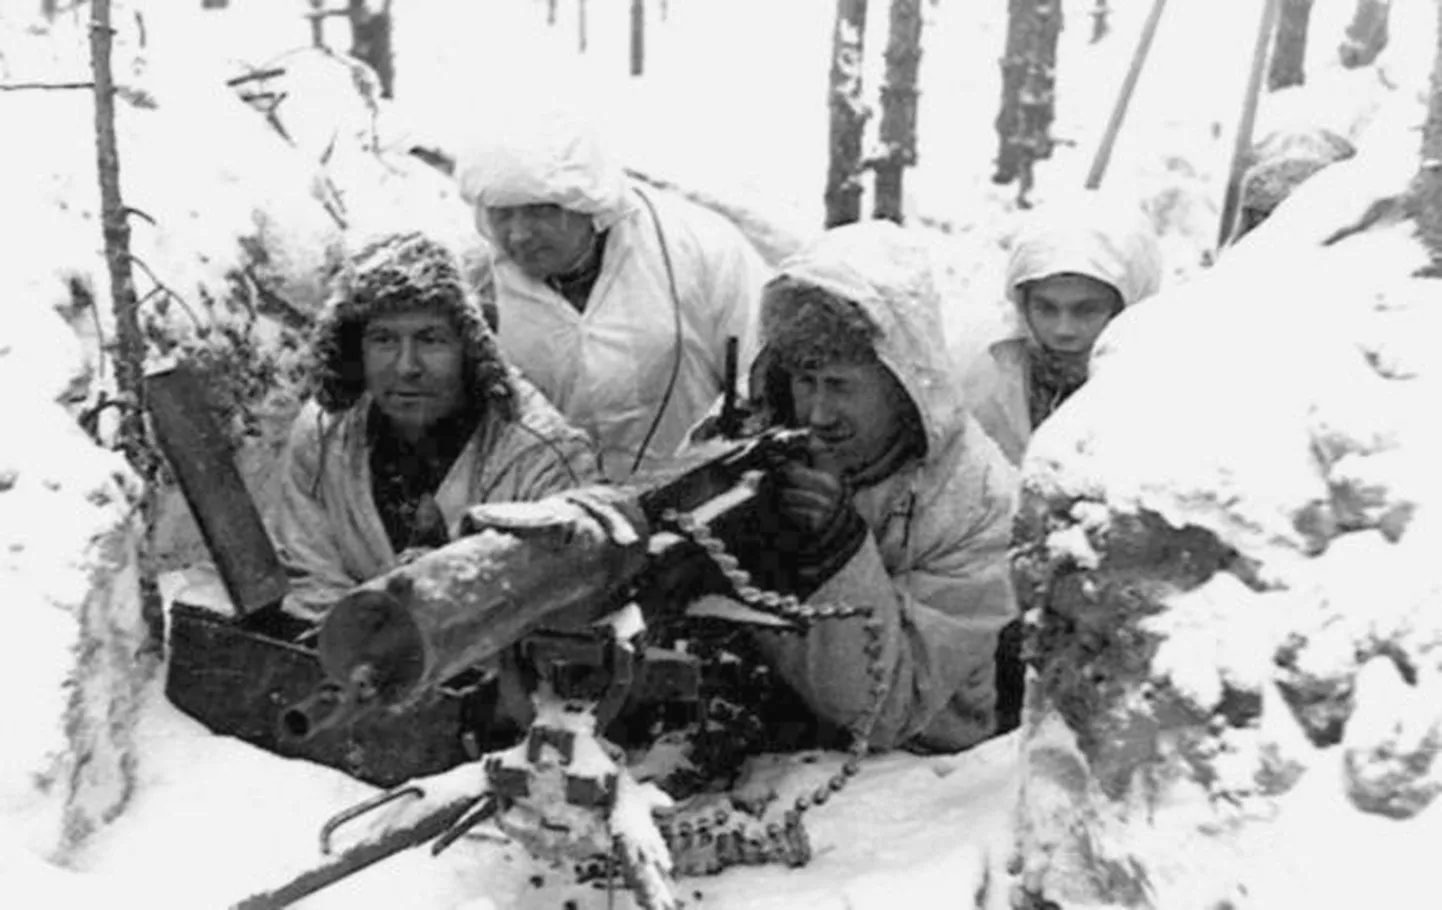 Soome sõdurid Talvesõjas. Ajalooline foto kuulub Kongressi raamatukogu varude hulka.